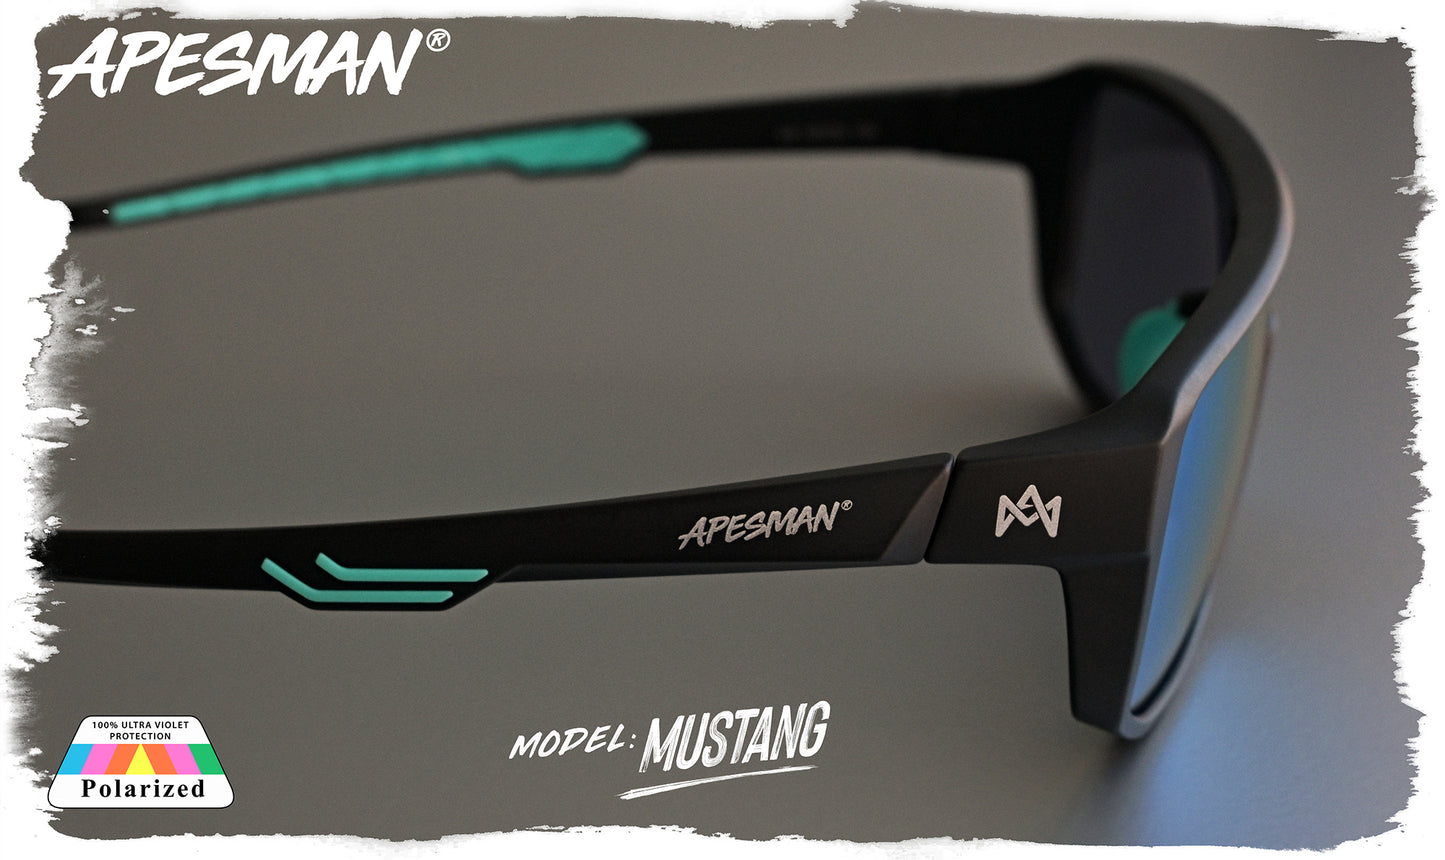 Apesman - Mustang transition 2 lens set